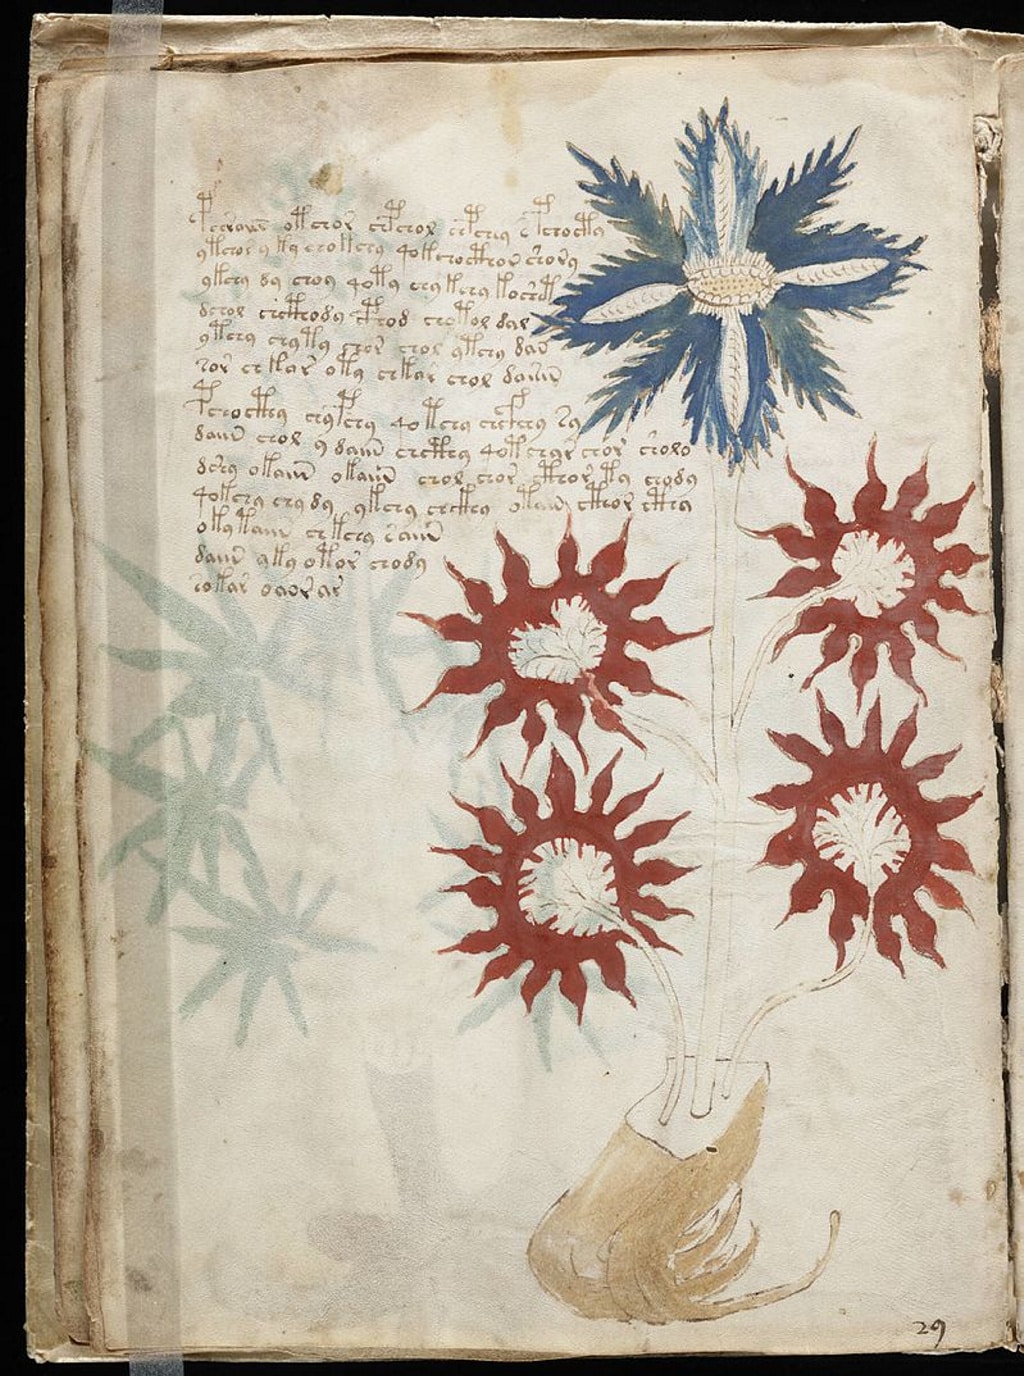 maduro perfume Alarmante Dicen que han descifrado el libro más misterioso del mundo, el Manuscrito  Voynich - Quo